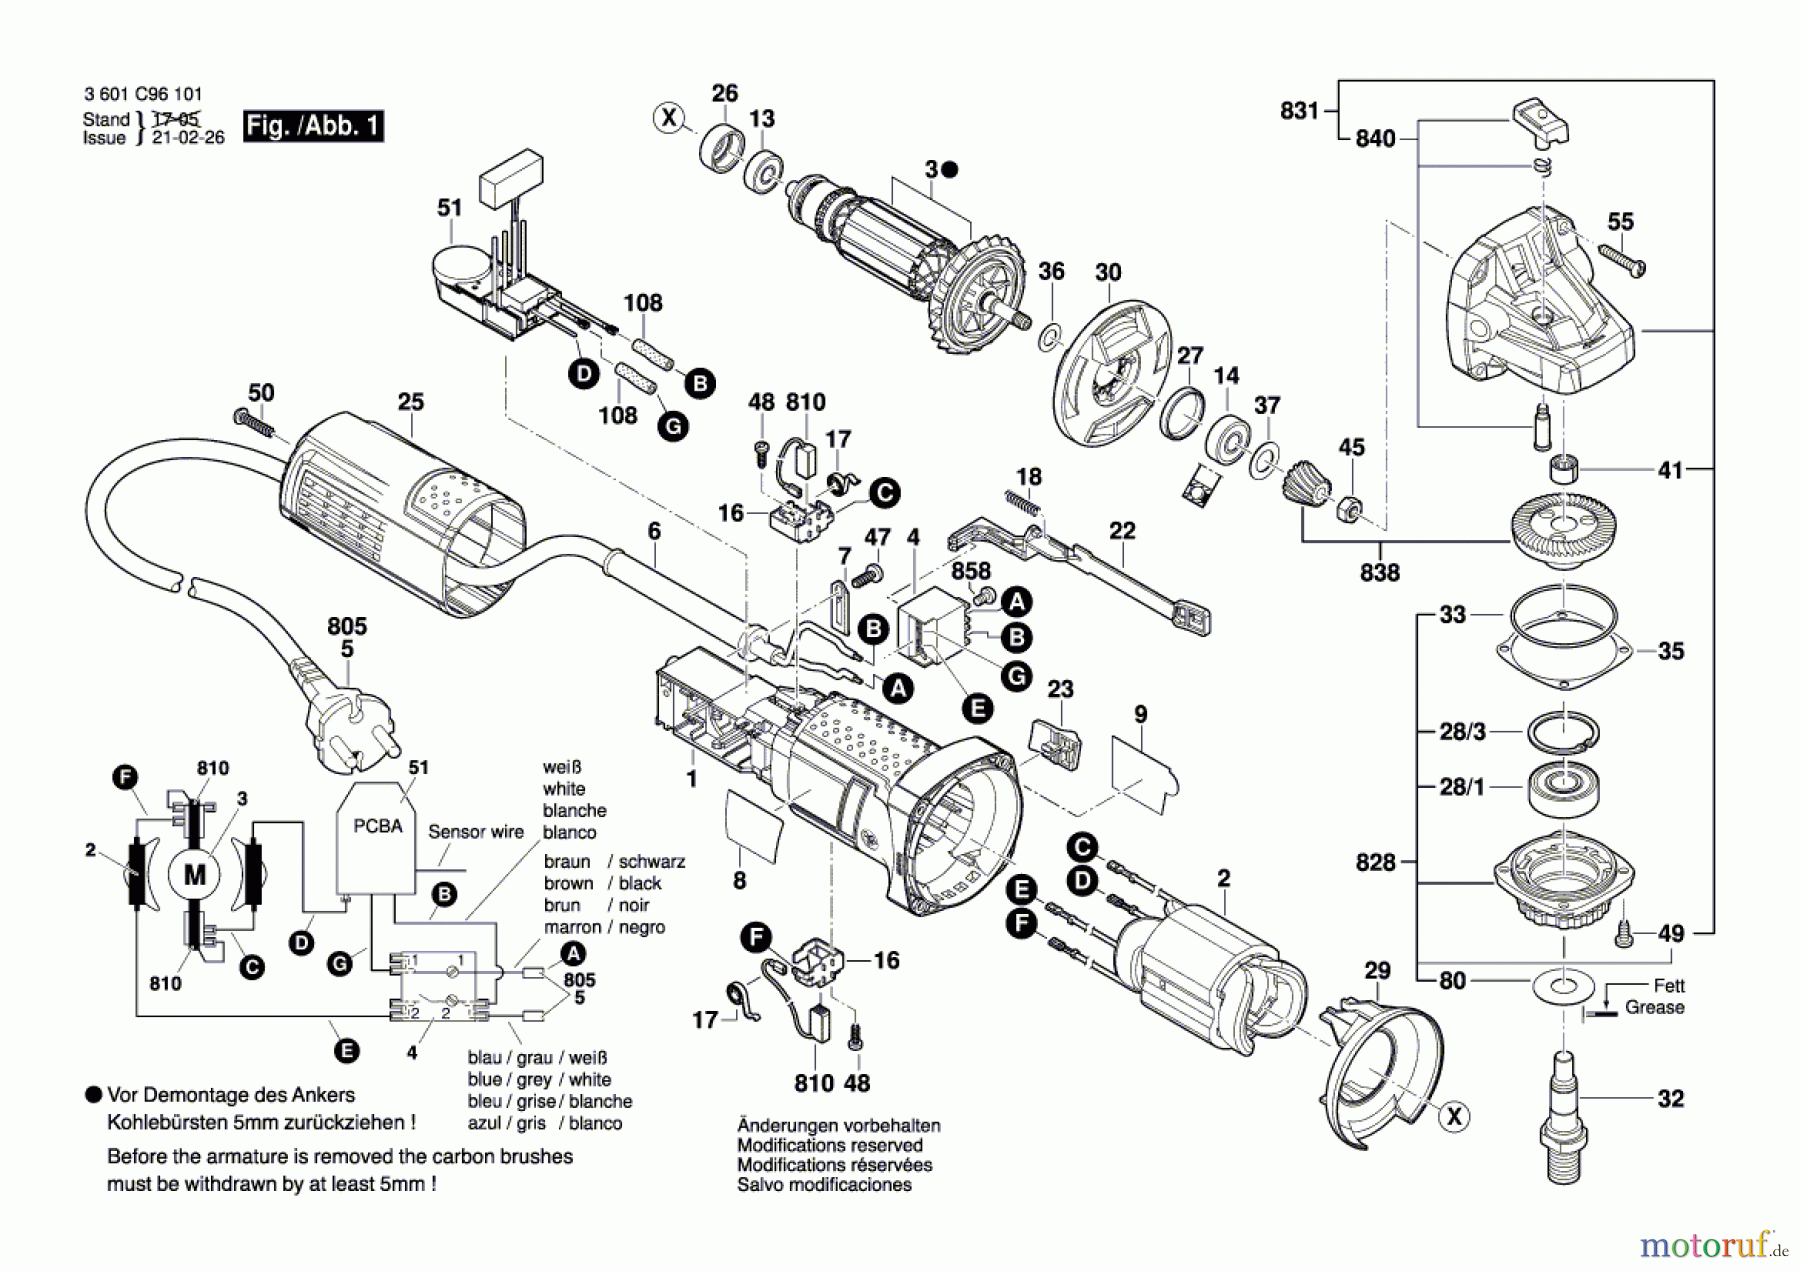  Bosch Werkzeug Winkelschleifer GWS 9-115 S Seite 1